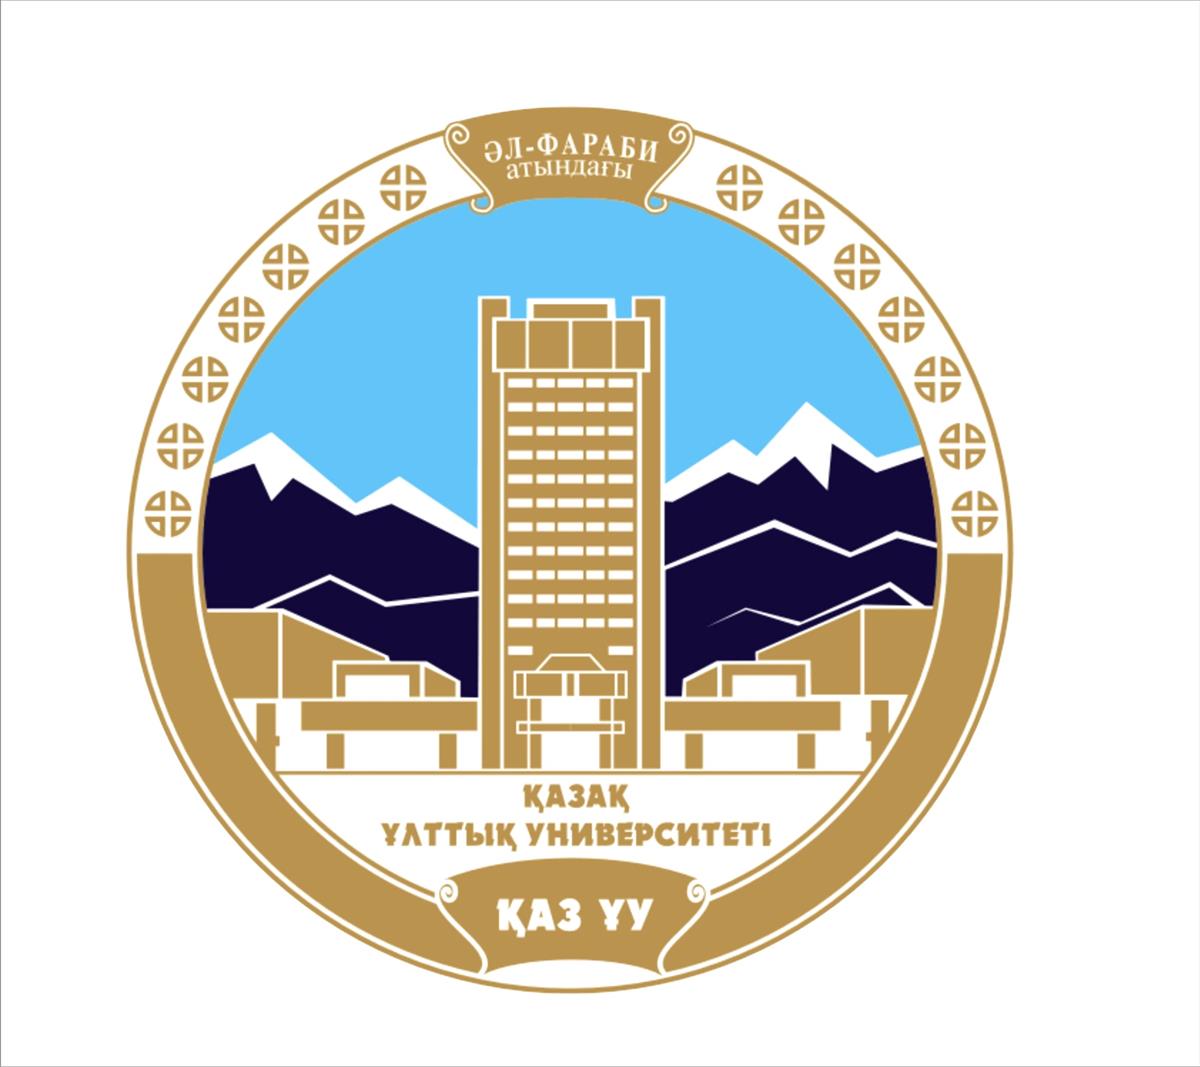 Abai Research Institute at Al-Farabi Kazakh National University